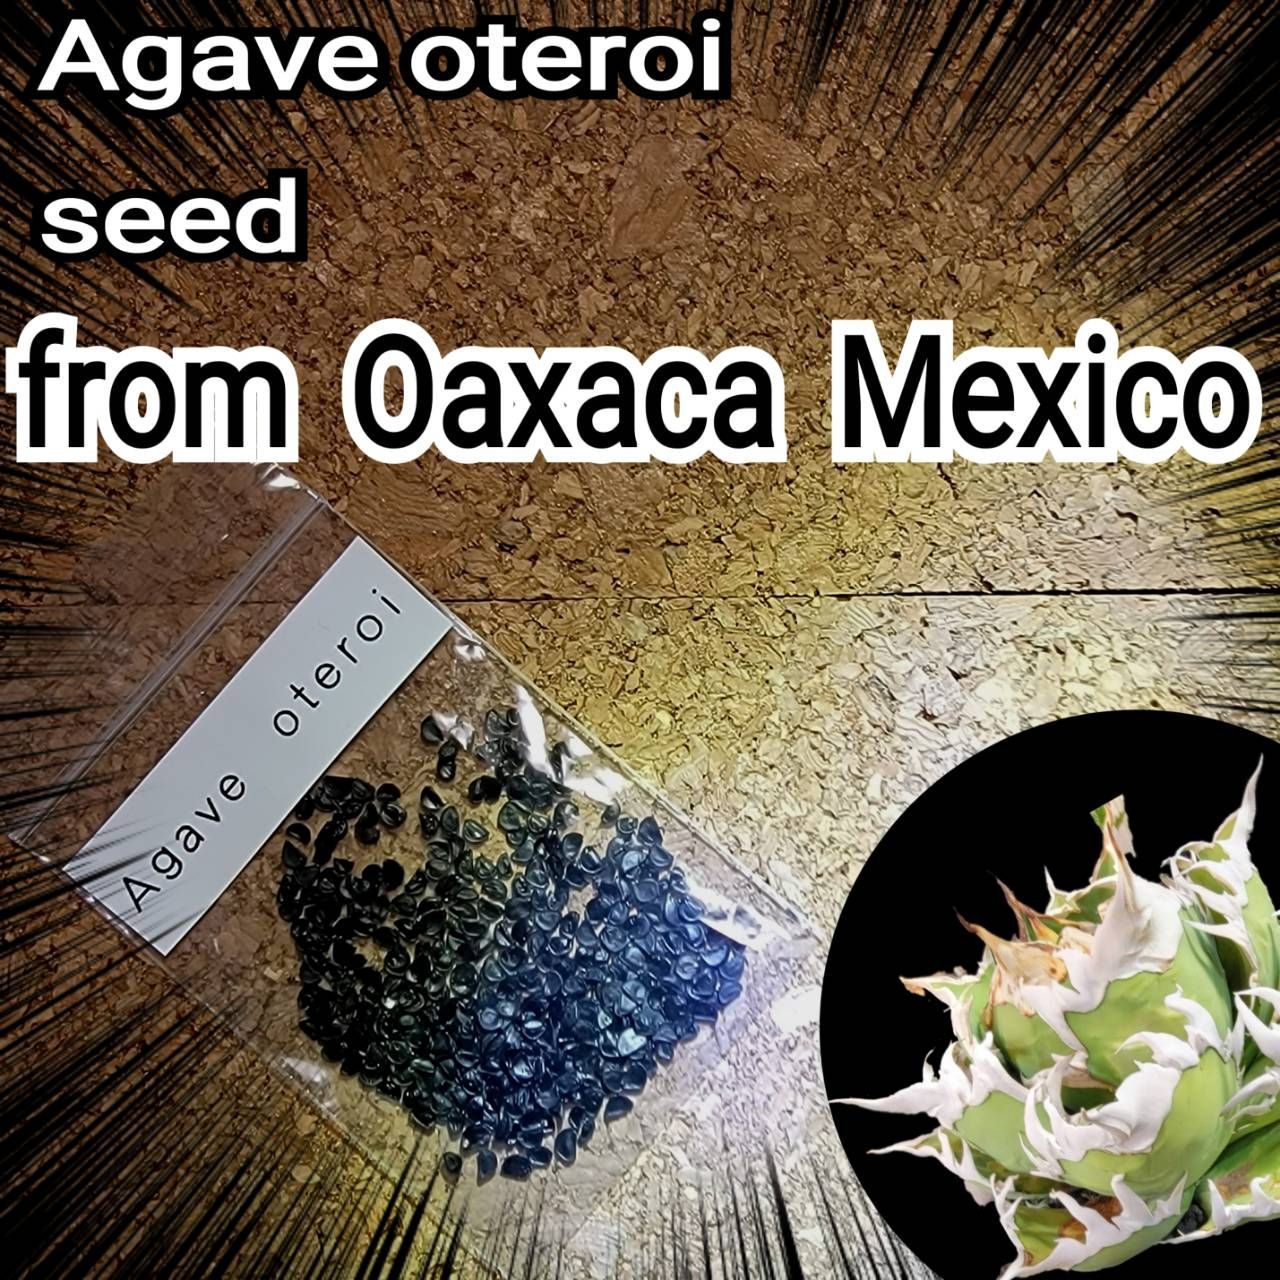 【数量限定格安】オアハカ 産 アガベ オテロイ agave oteroi Oaxaca ( チタノタ ゴジラ 悪魔くん バケモノ スーパーチタノタ ) アガベ